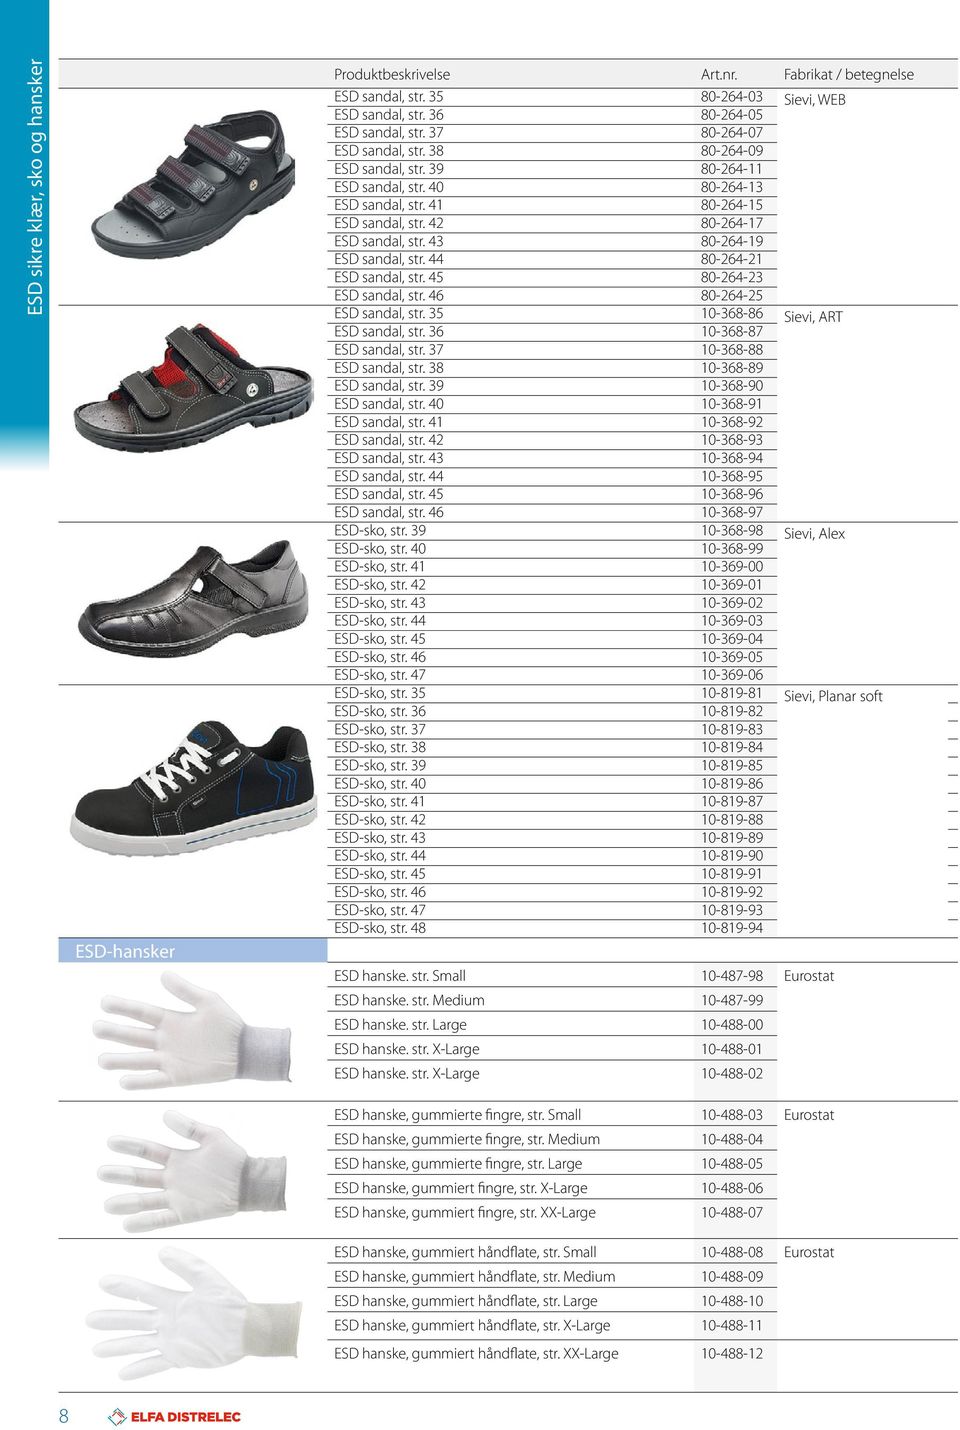 45 80-264-23 ESD sandal, str. 46 80-264-25 ESD sandal, str. 35 10-368-86 ESD sandal, str. 36 10-368-87 Sievi, ART ESD sandal, str. 37 10-368-88 ESD sandal, str. 38 10-368-89 ESD sandal, str.